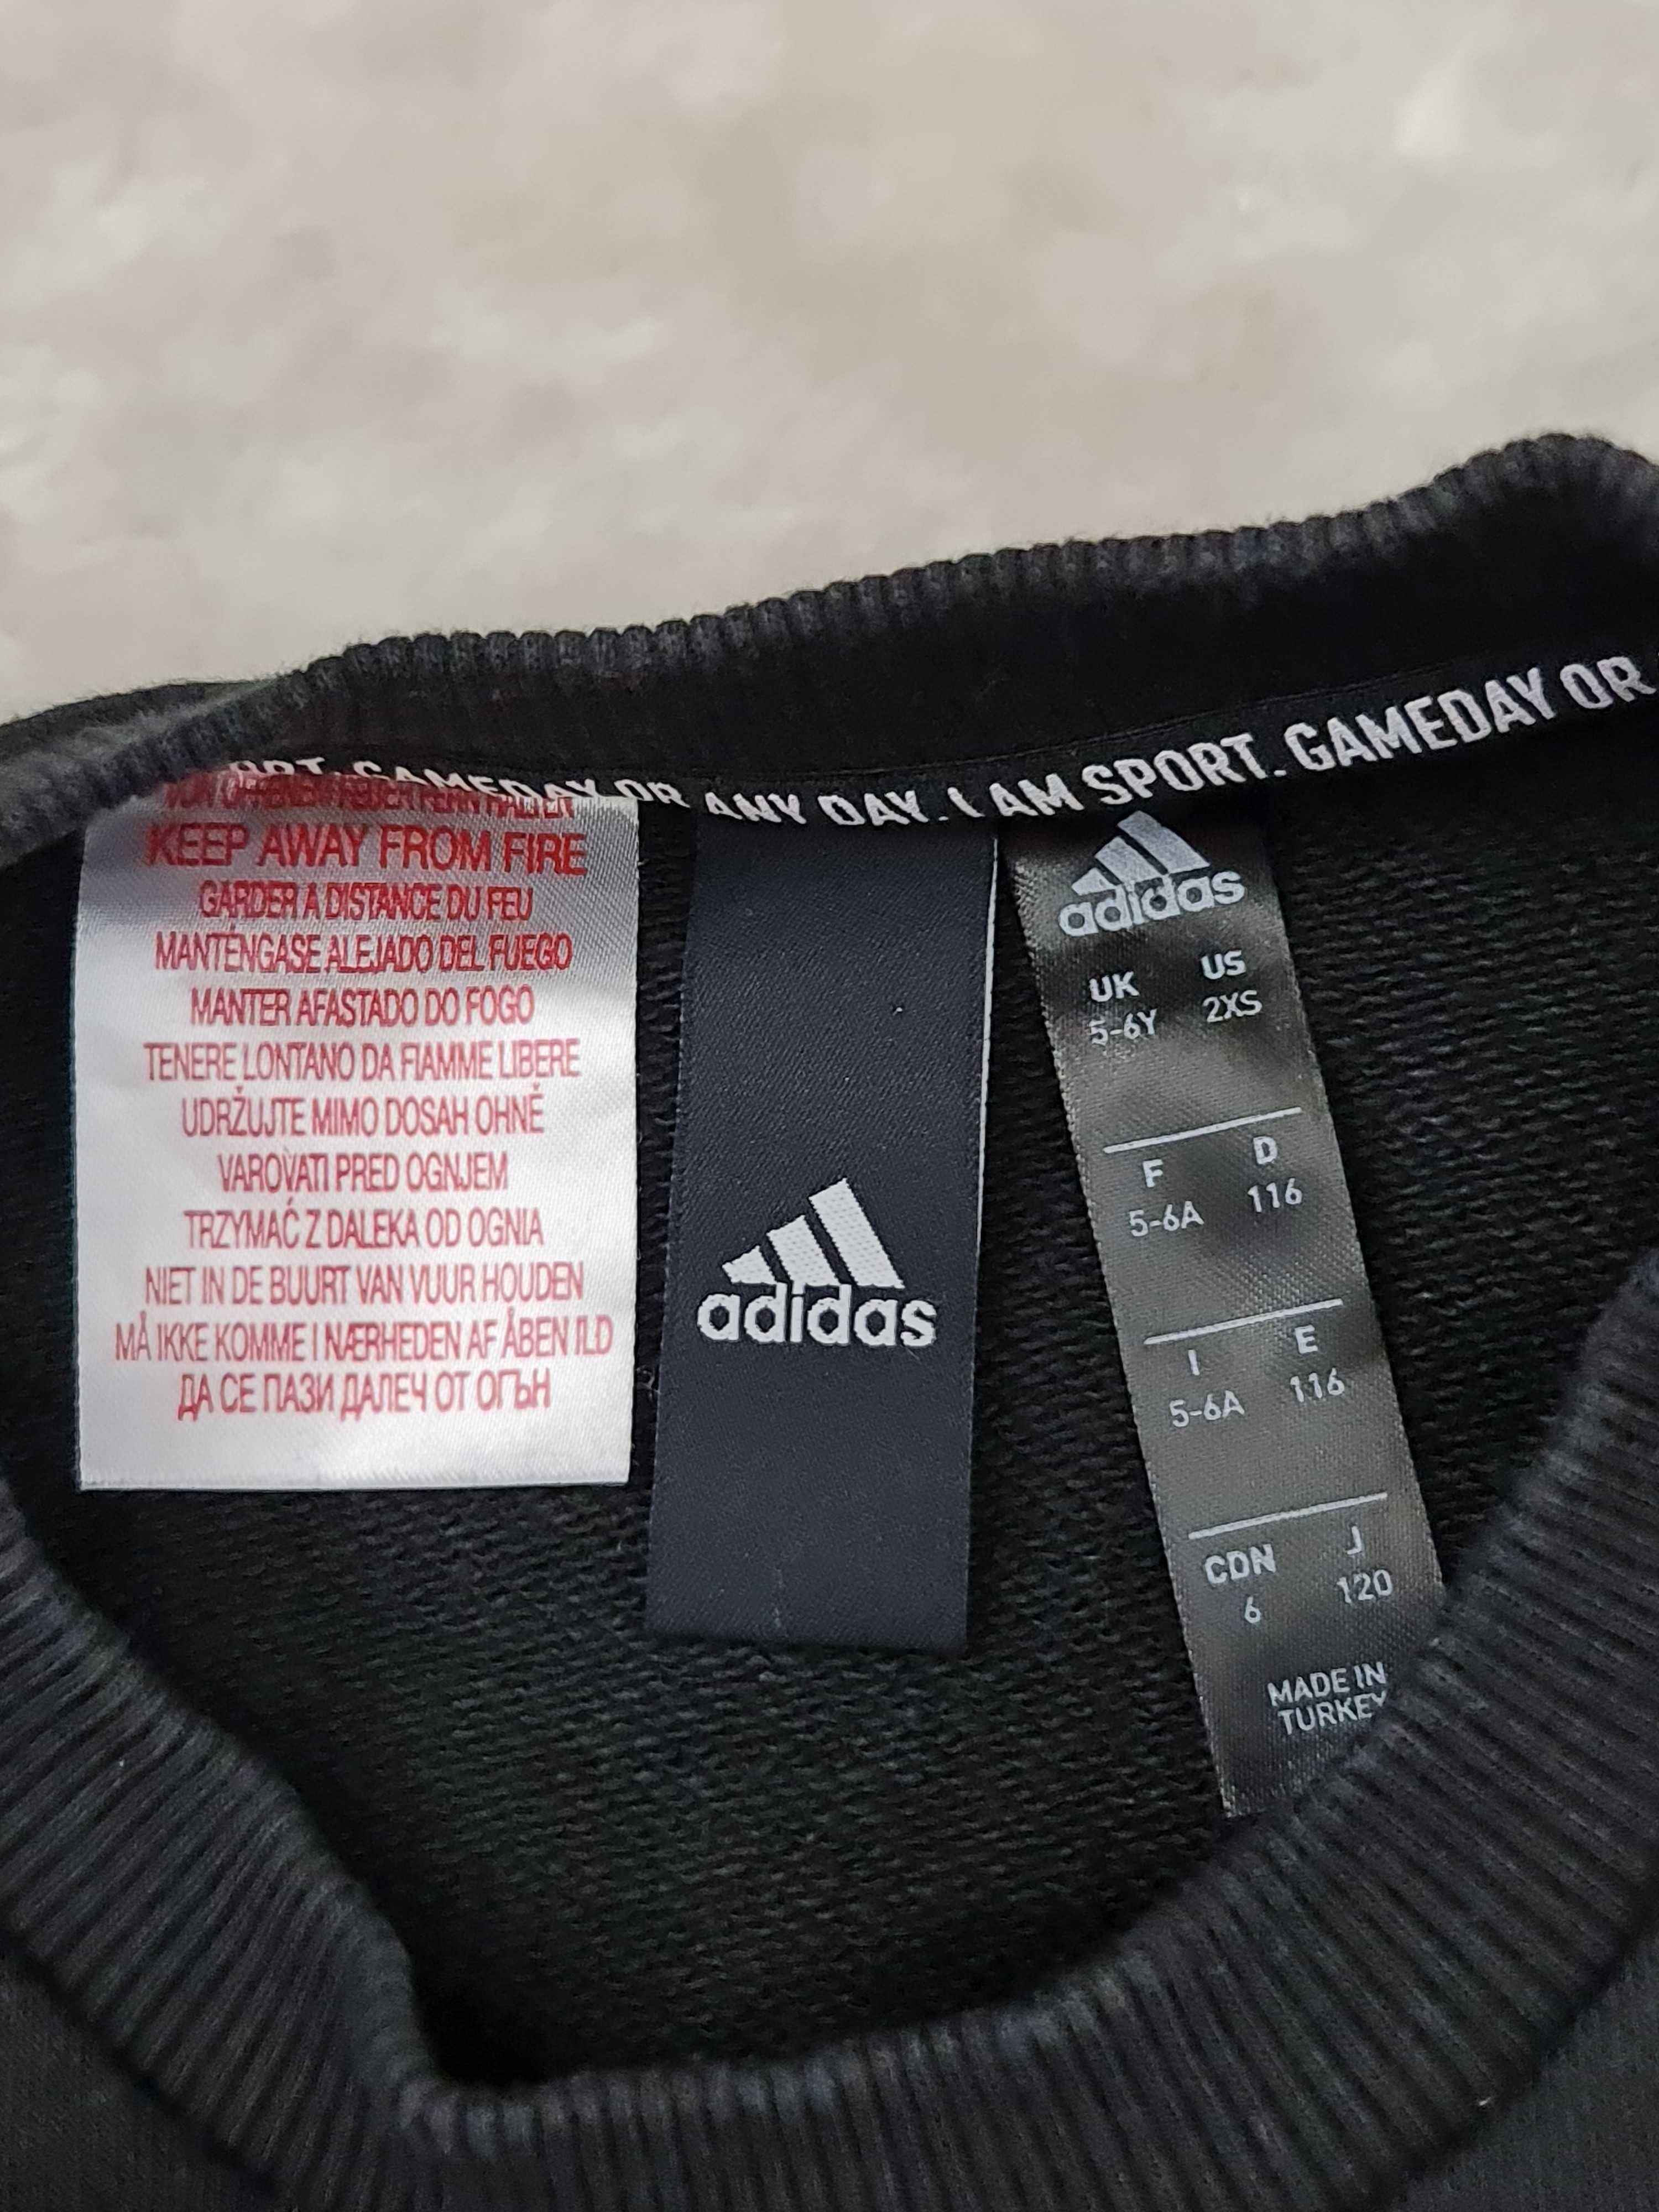 Bluza Adidas Logo Czarna Rozmiar 110 - 116 na Wiek 5 a 6 Lat